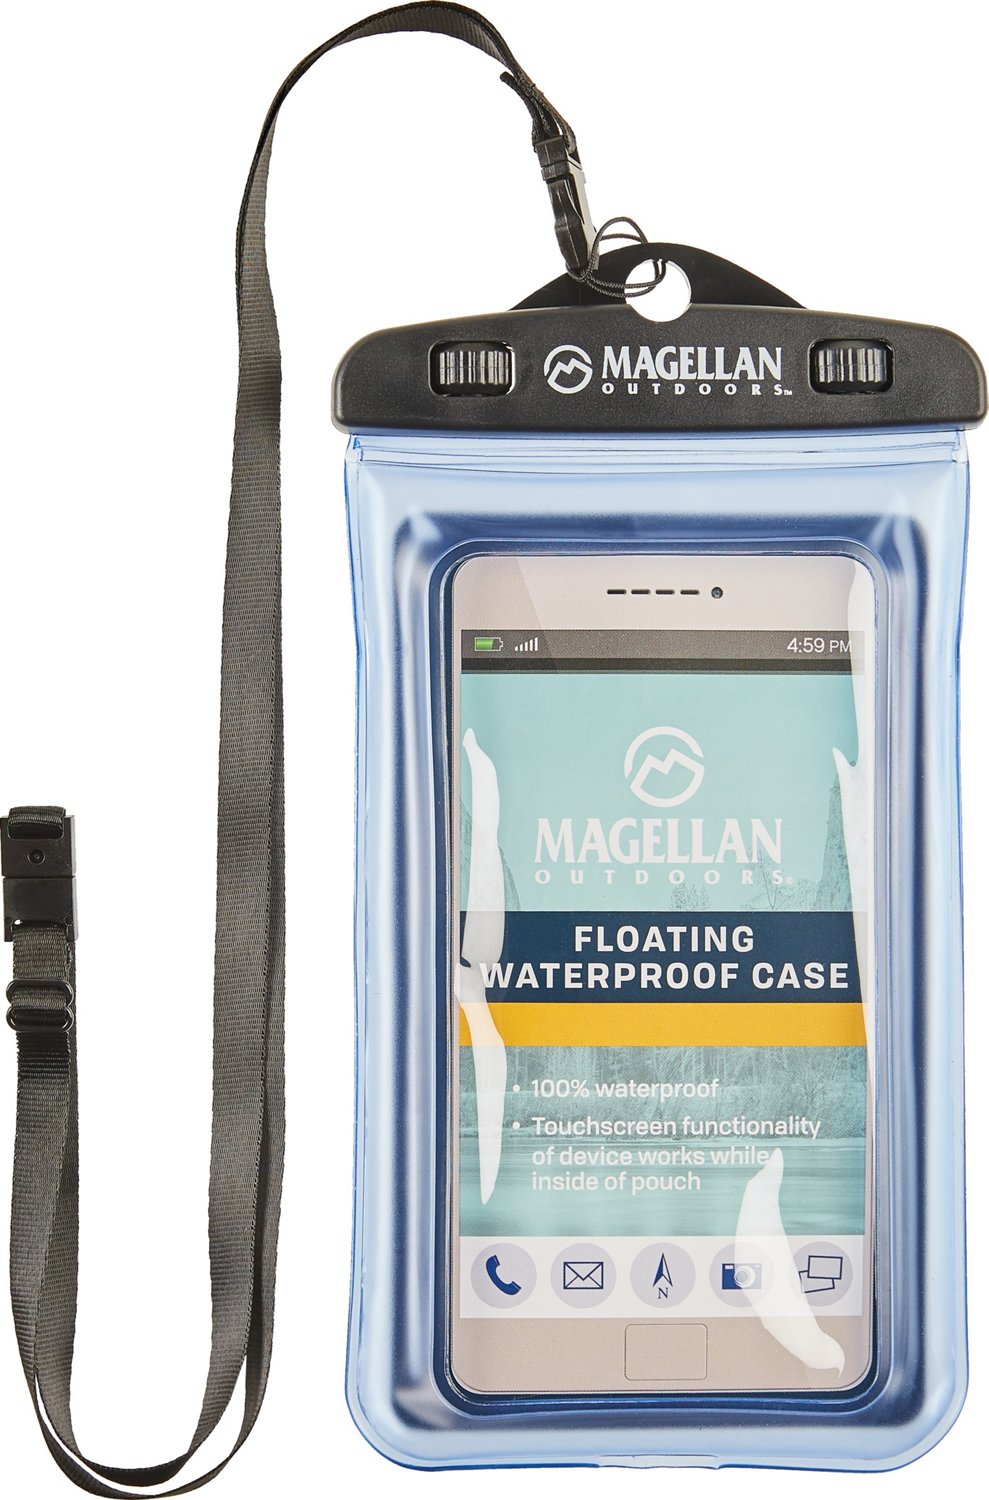 Magellan Outdoors Waterproof Floating Phone Case | Academy